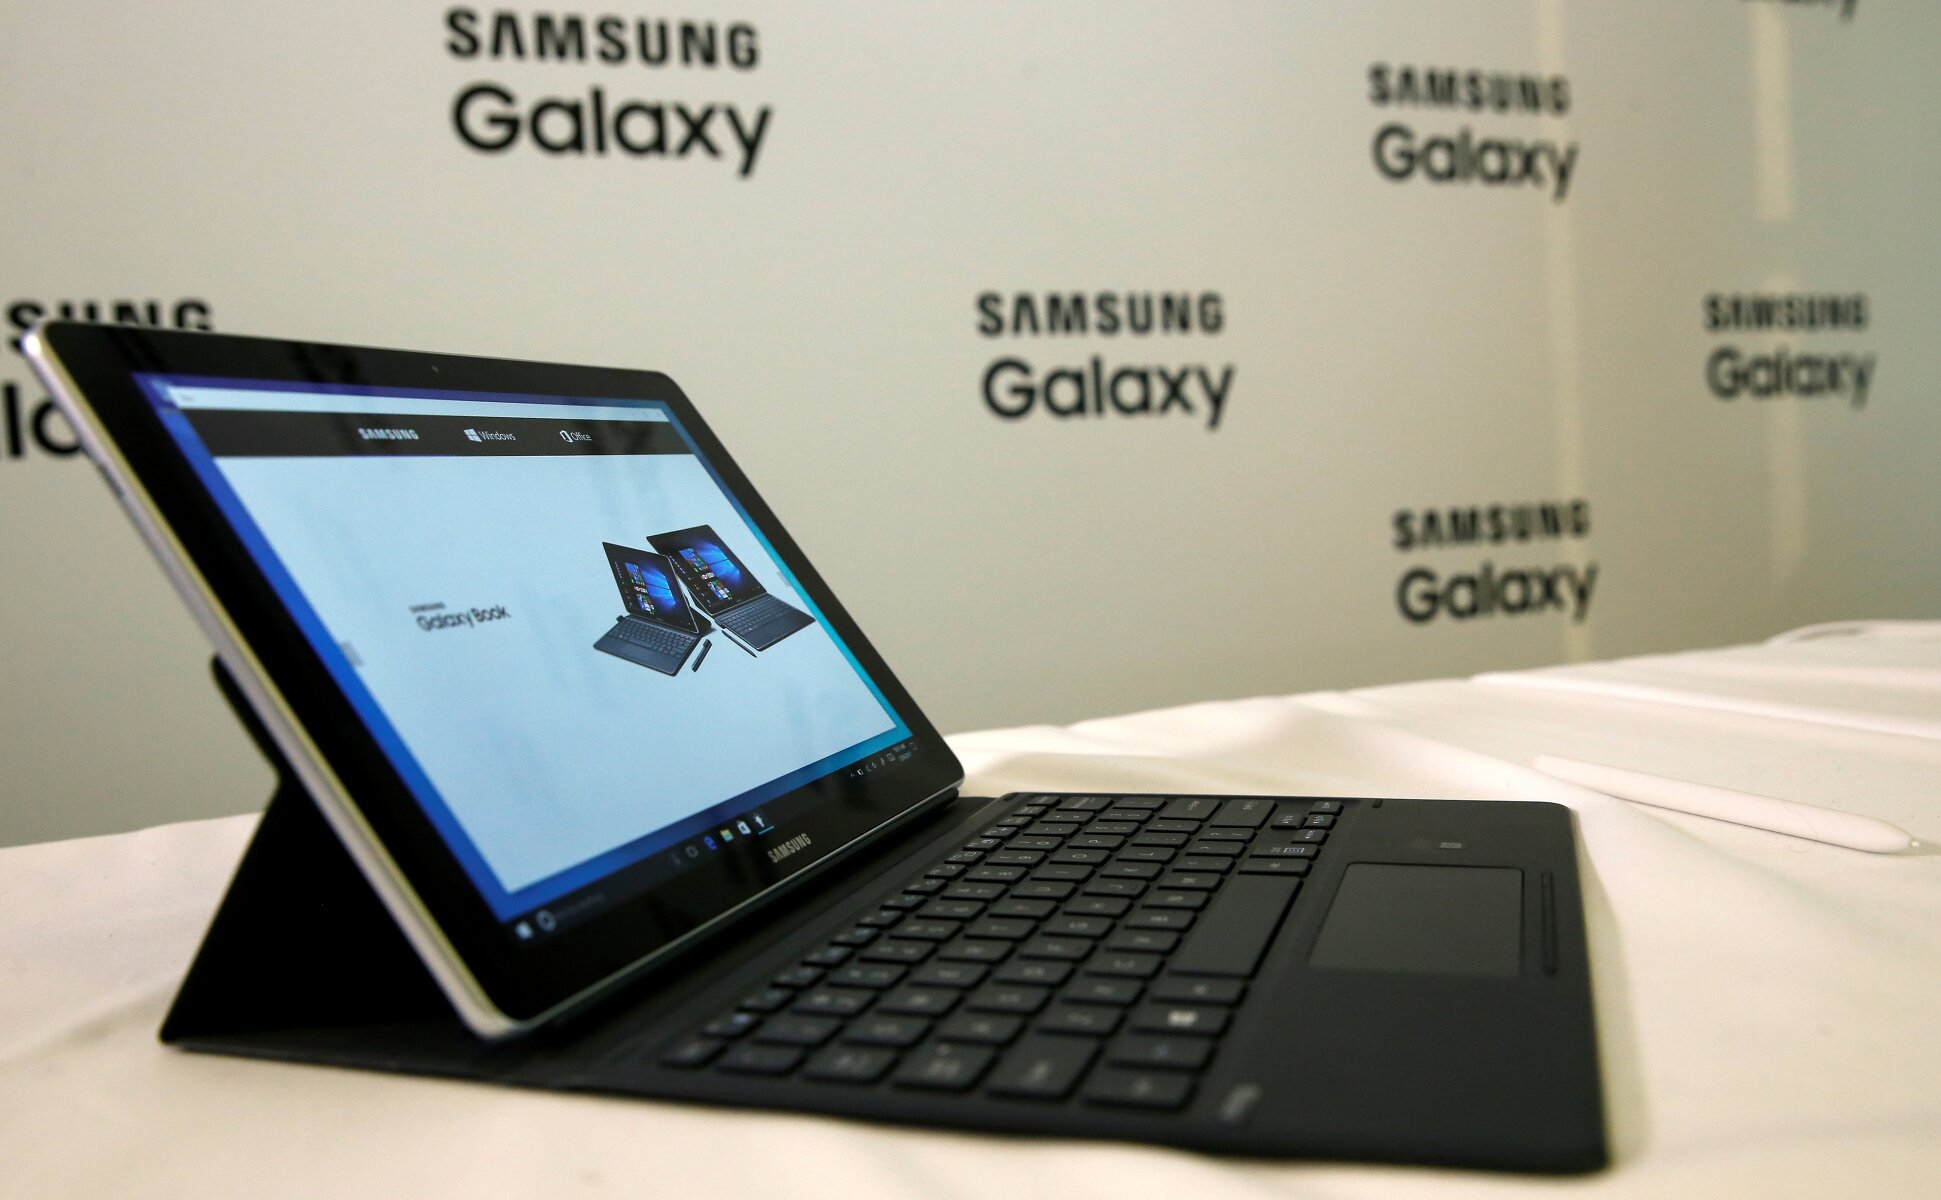 <p><strong>Samsung&rsquo;s Galaxy Book&nbsp;</strong></p>

<p>В этом году корейская компания не привезла в Барселону новые&nbsp;модели телефона, представив вместо них гибридные планшеты. В предыдущей&nbsp;модели Galaxy TabPro S Samsung позаимствовала и улучшила многие идеи у линейки Microsoft Surface. Представленные в этом году модели пошли еще дальше, отмечает The Verge. Оба планшета &mdash; Galaxy Book 10 и 12 &mdash; выполнены в алюминиевом корпусе и отличаются размером экрана и начинкой.&nbsp;Galaxy Book&nbsp;10 оснащена Full HD&nbsp;TFT-дисплеем на&nbsp;10,6&nbsp;дюймов, процессором седьмого поколения Intel Core m3. У &laquo;старшей&raquo;&nbsp;модели экран Super AMOLED на&nbsp;12&nbsp;дюймов и&nbsp;разрешением 2160&times;1440&nbsp;пикселей, а также процессор Intel Core i5.Оба планшета работают на системе Windows и продаются с клавиатурой и стилусом S&nbsp;Pen. Он поддерживает функции создания быстрых заметок, редактирования PDF-файлов и&nbsp;Advanced Drawing &mdash; набор для профессионального рисования. Время работы планшетов без подзарядки 10&nbsp;и 10,5&nbsp;часов. Дата выхода и&nbsp;цена пока неизвестны.</p>